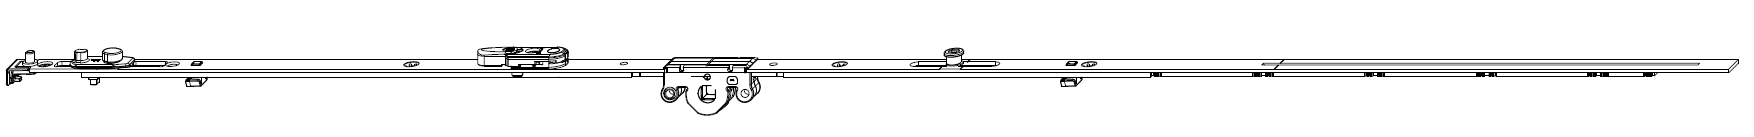 MAICO -  Cremonese MULTI-MATIC anta ribalta antieffrazione altezza maniglia fissa con piedino e dss per ribalta e bilanciere - gr / dim. 840 - entrata 15 - alt. man. 300 - lbb/hbb 661 - 840